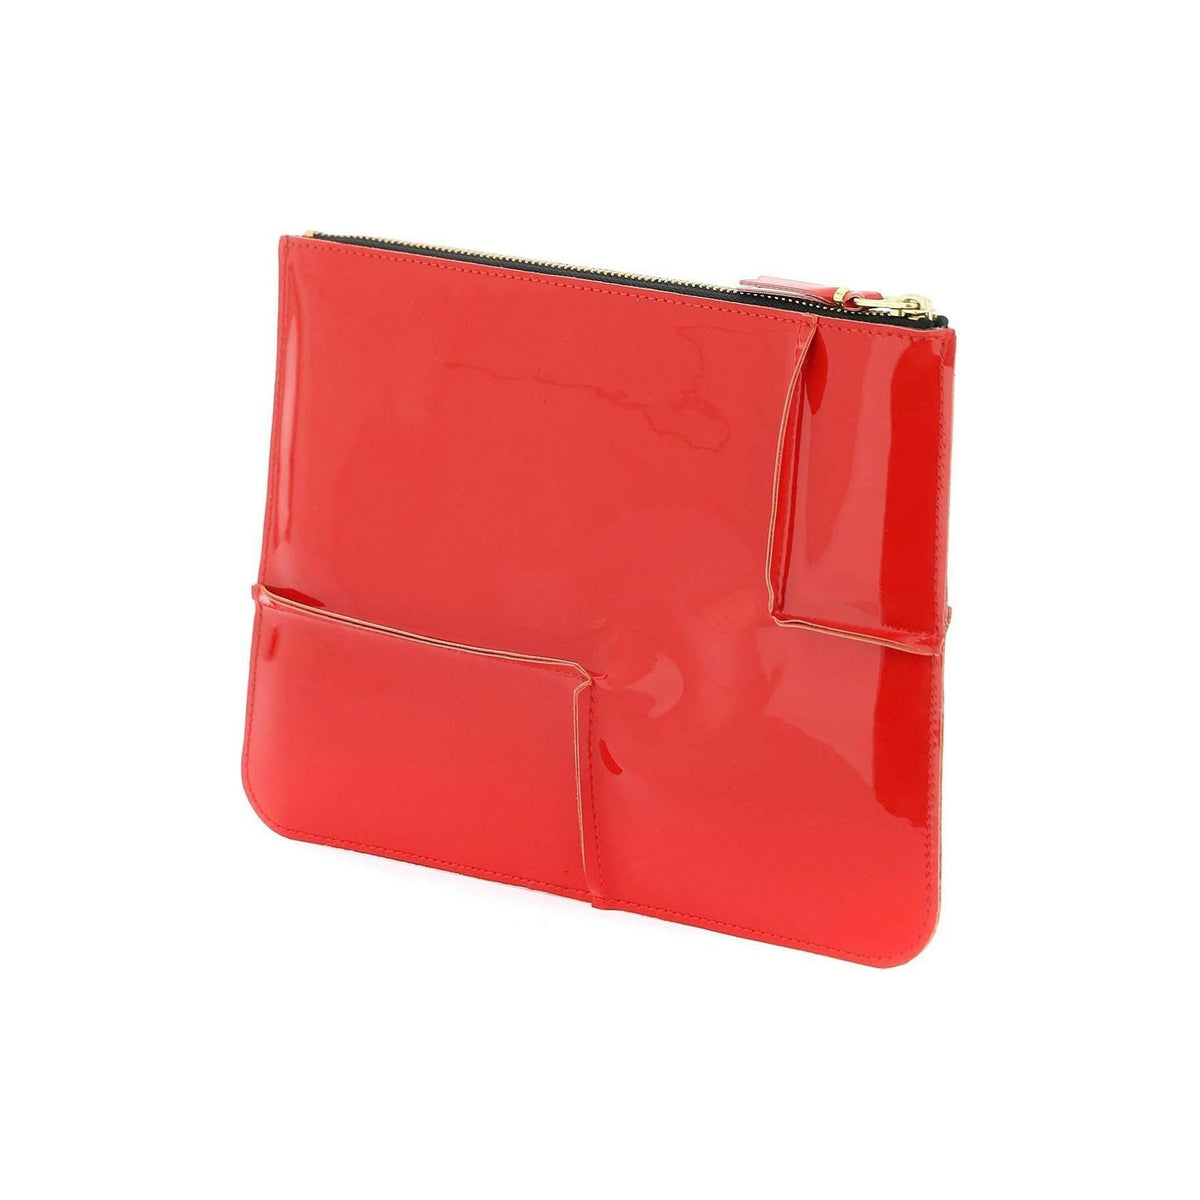 COMME DES GARCONS WALLET - Comme des Garçons Red Glossy Patent Leather Pouch - JOHN JULIA